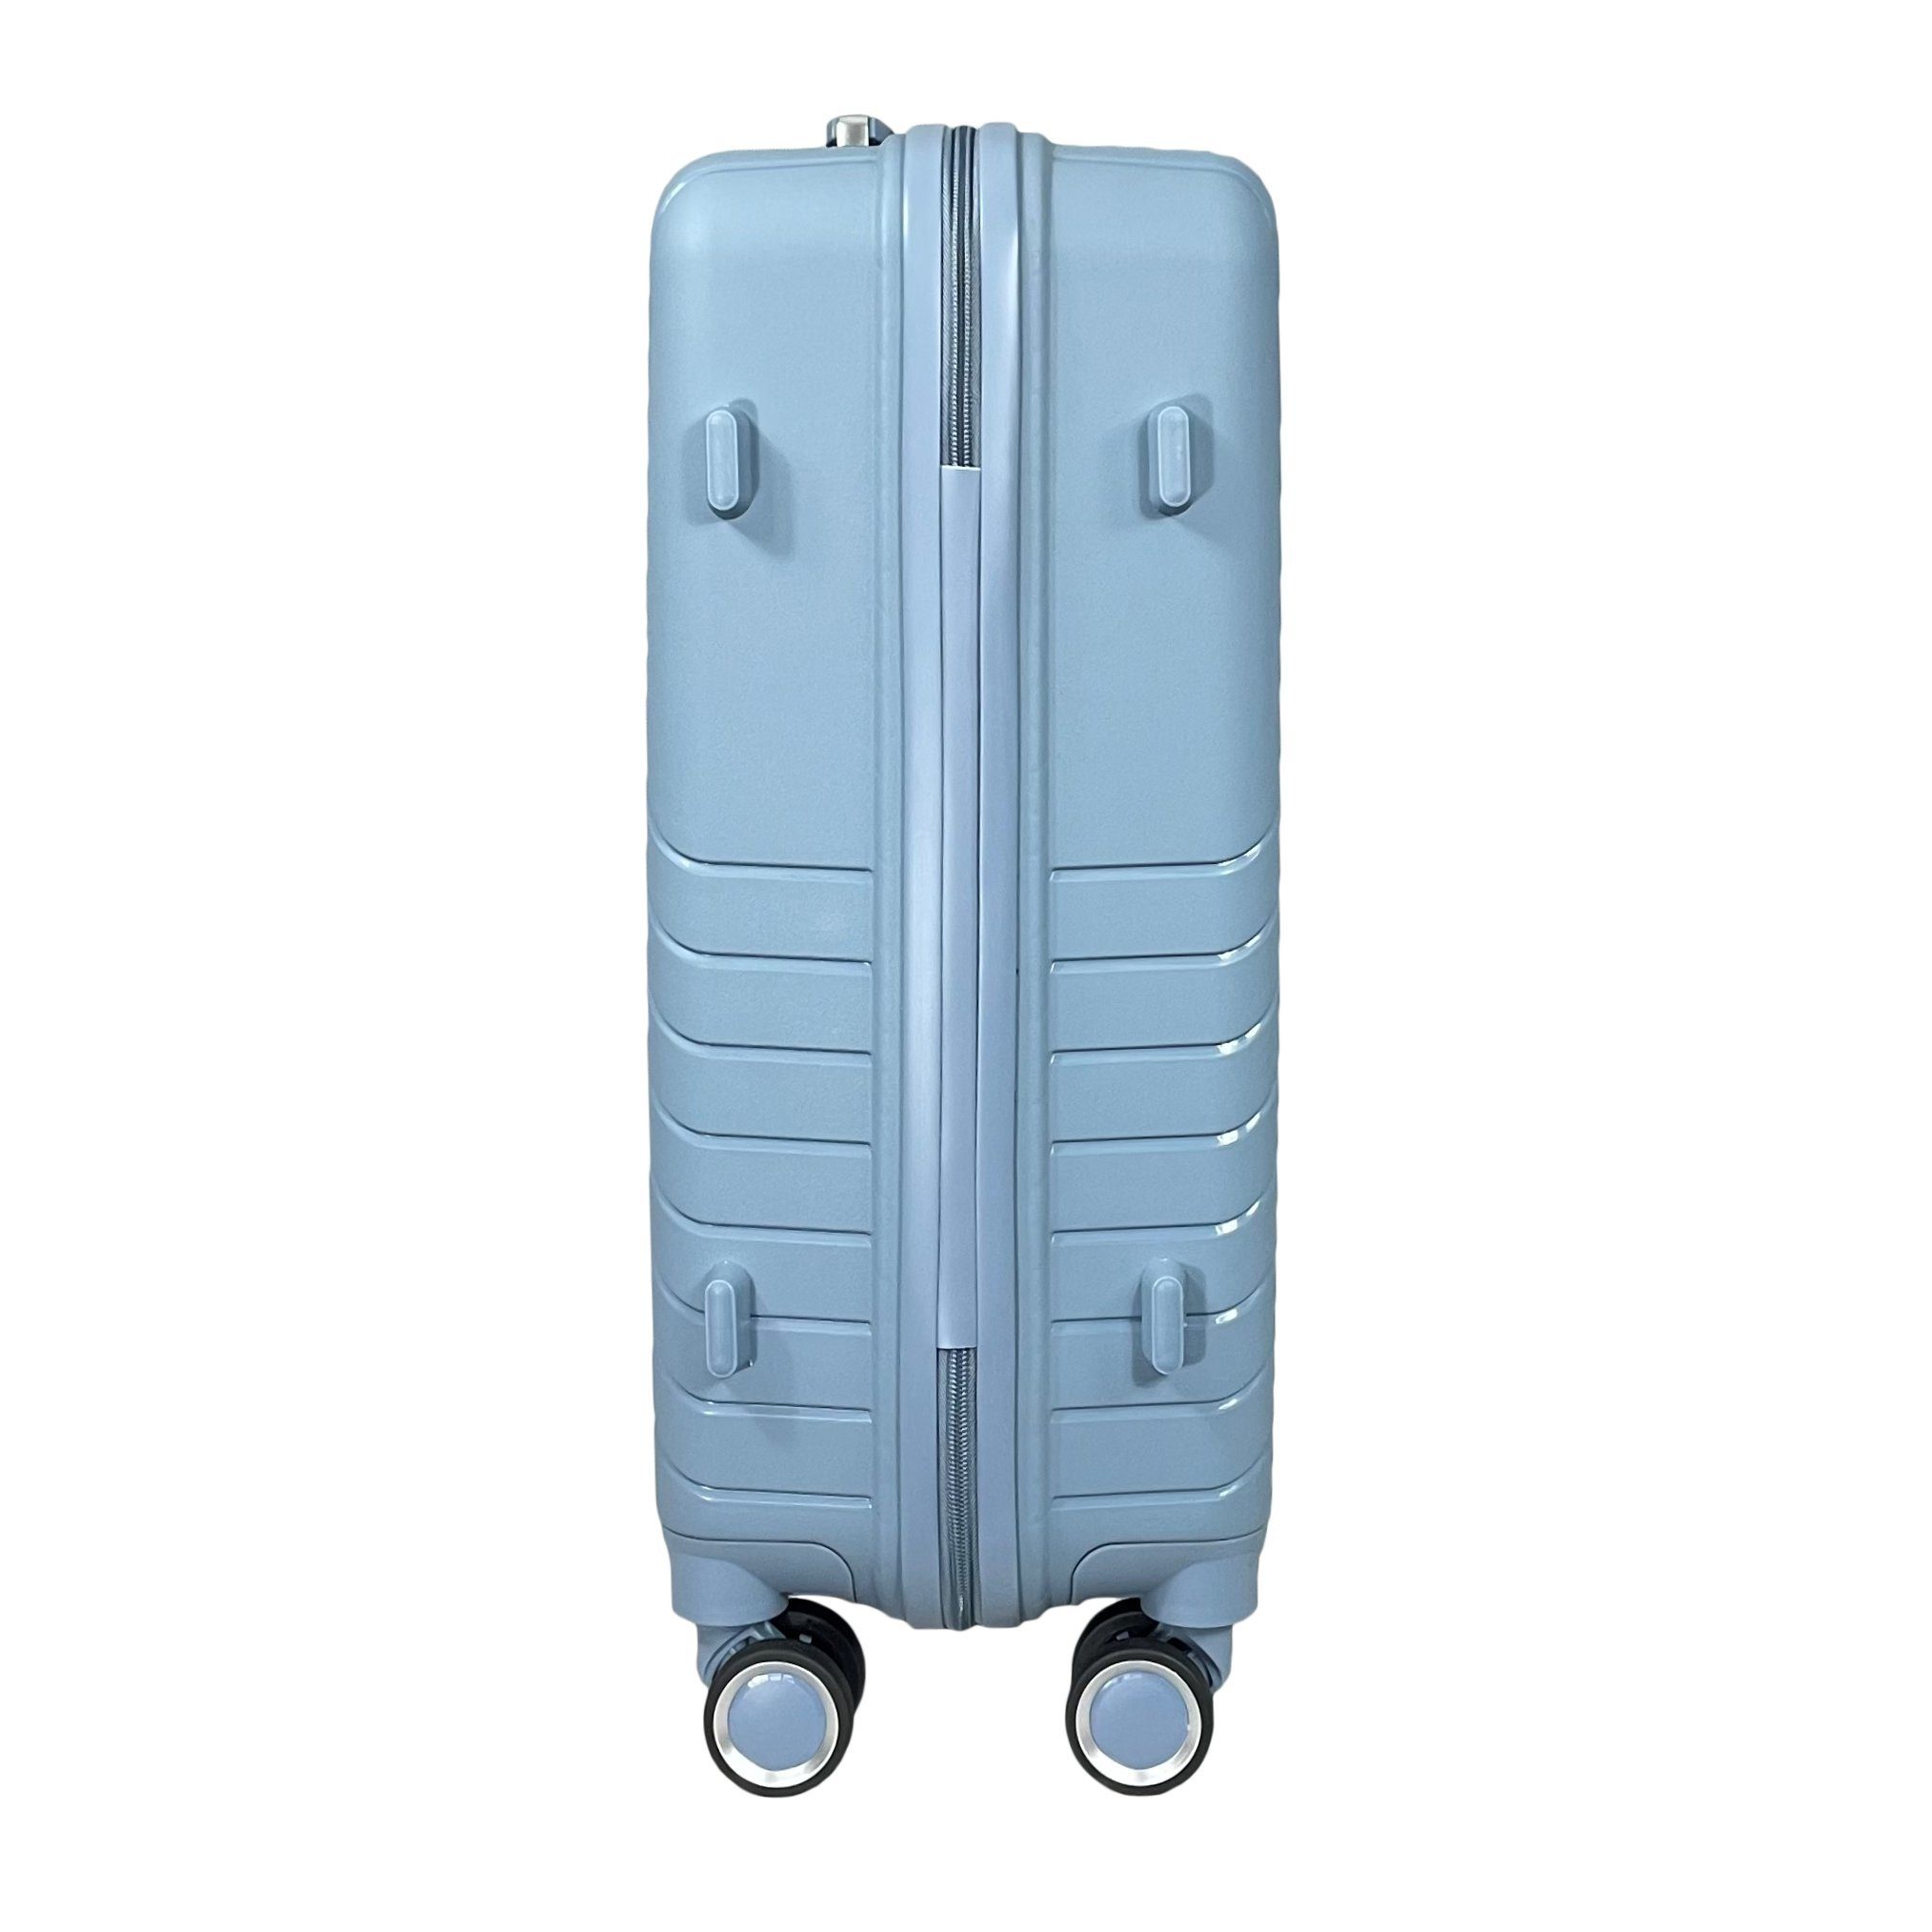 Koffer Tasche Grau-Blau Set Reisekoffer Koffer M/L/XL/XXL/4er Reisetasche Handgepäck MTB